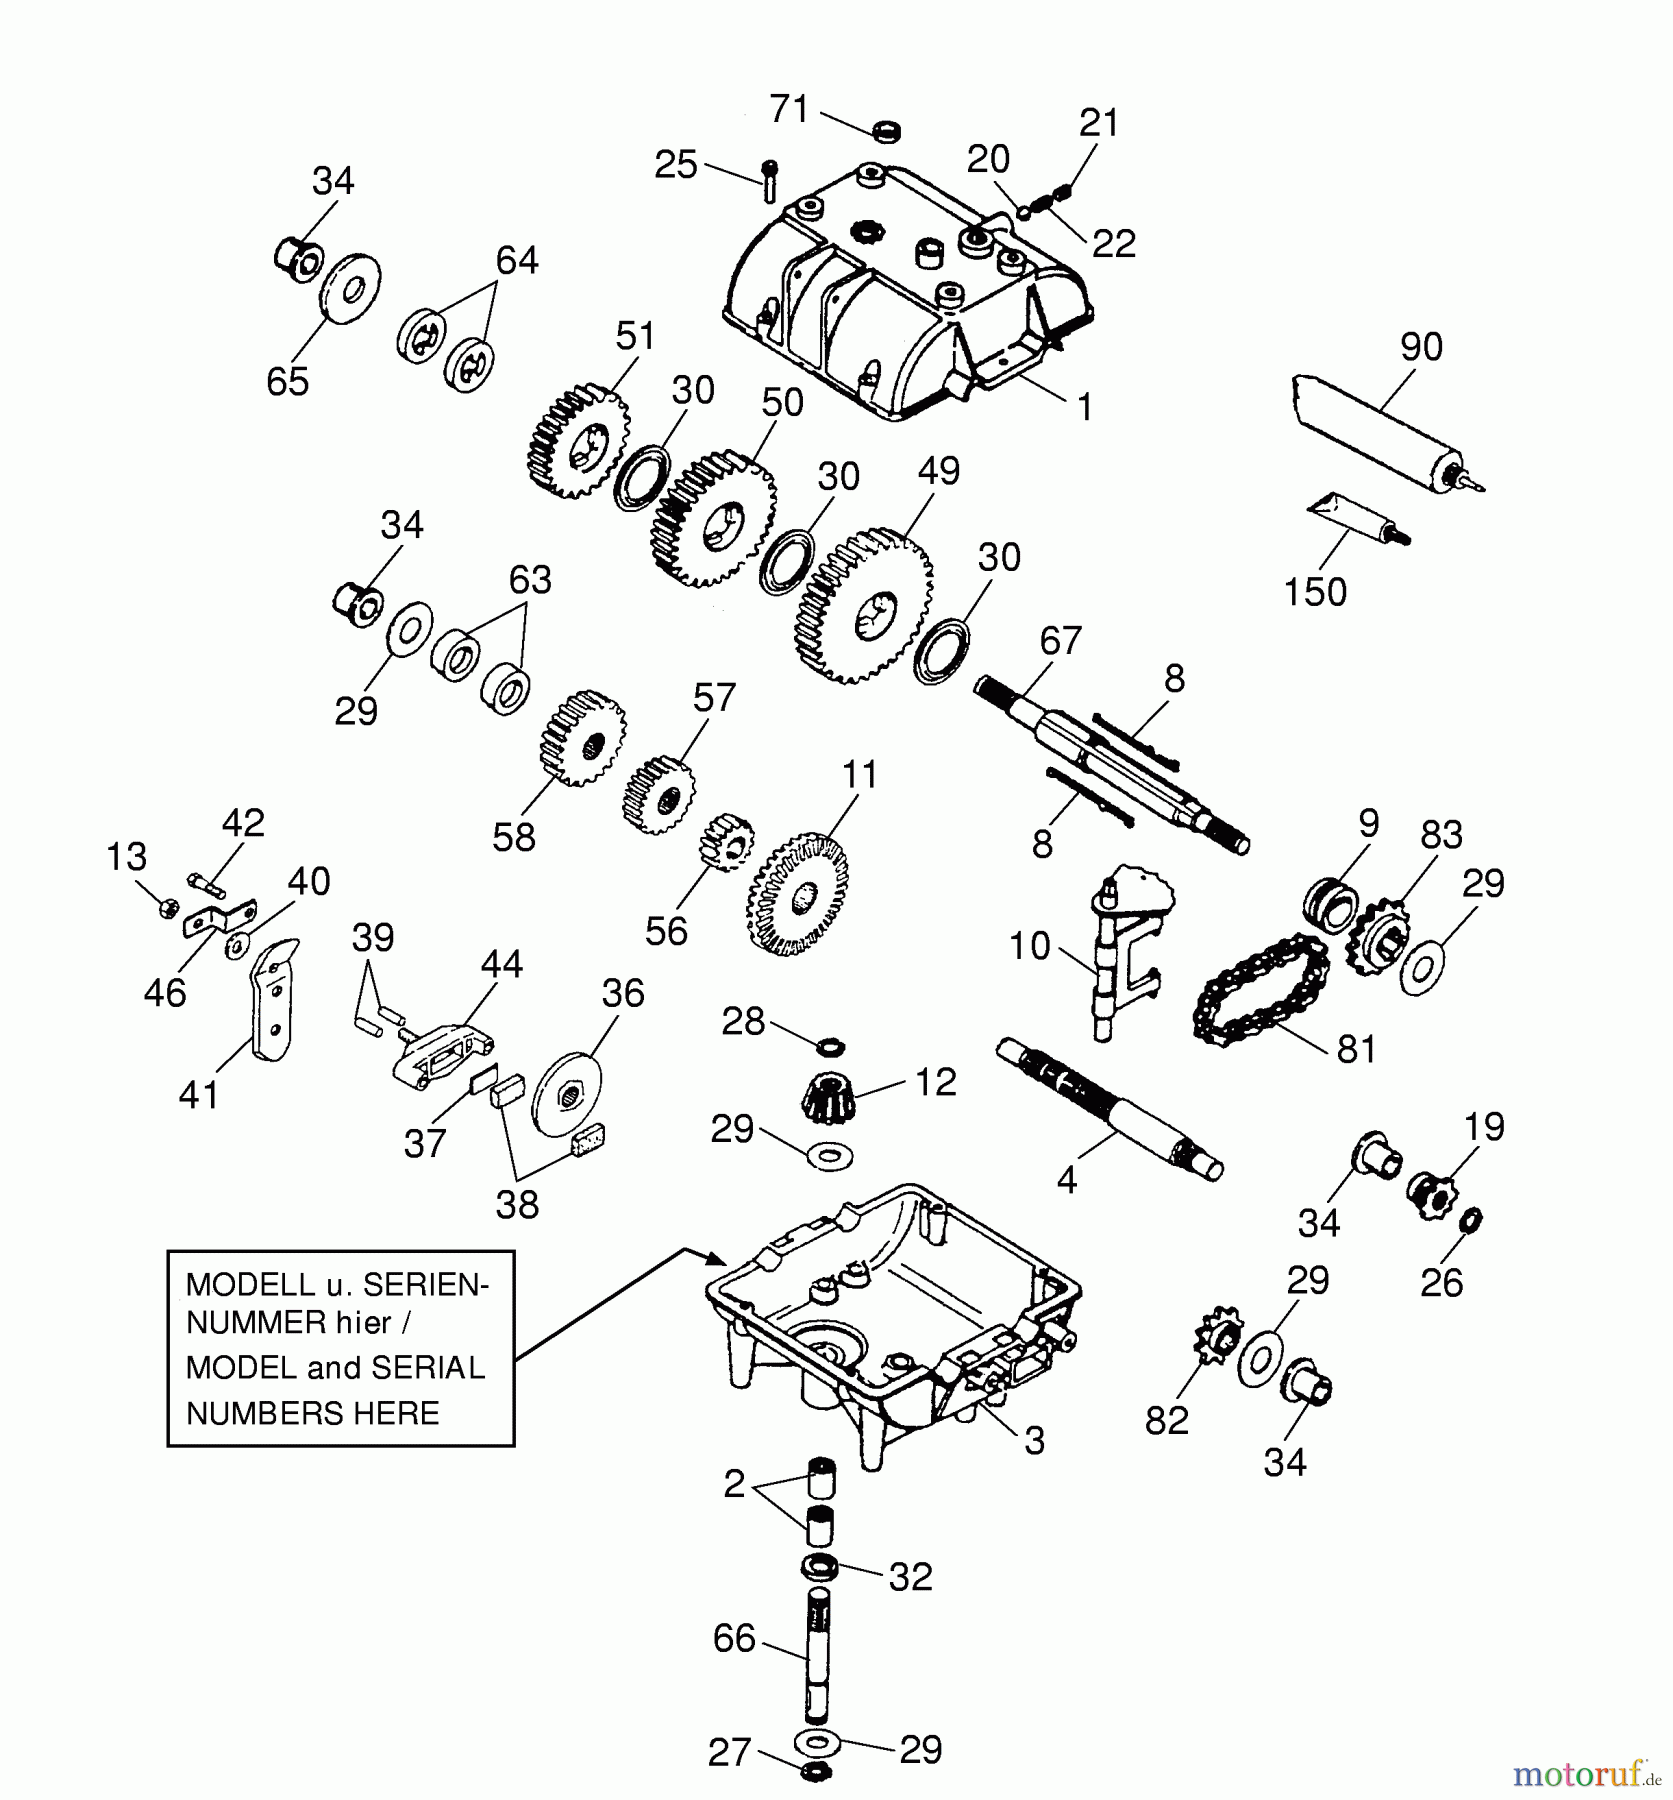  Wolf-Garten Scooter OHV 3 M 6960000 Series A-C  (1999) Gearbox